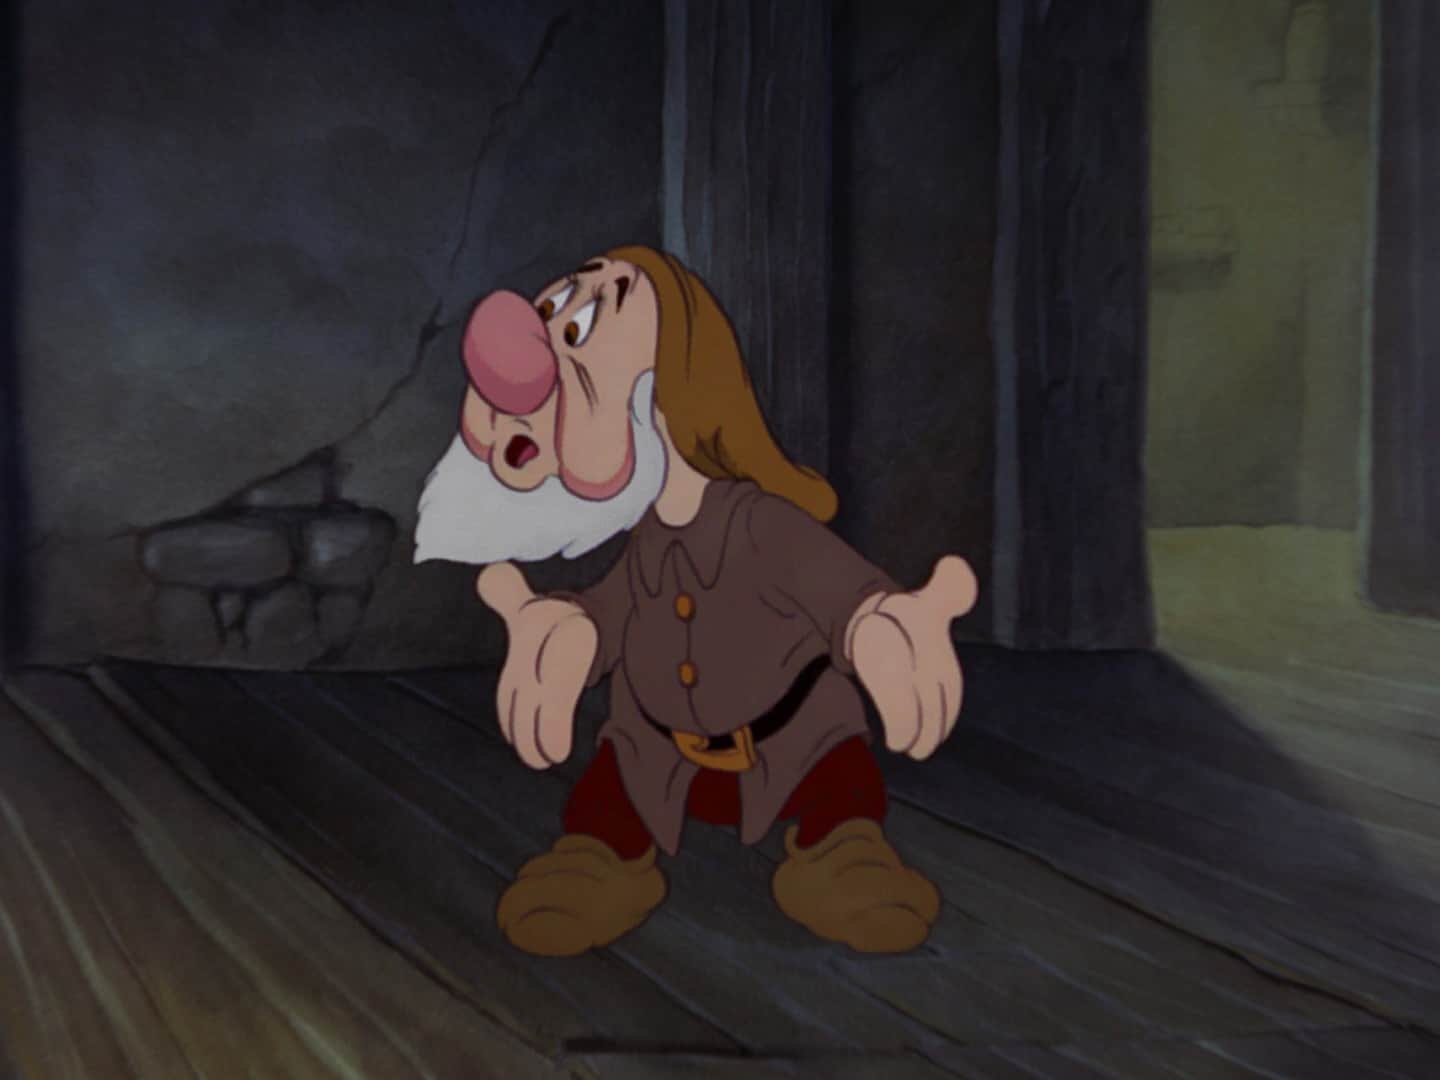 Une image animée de Grumpy, un nain de « Blanche-Neige » de Disney, debout dans une pièce faiblement éclairée, l'air mécontent, les bras croisés et le visage froncé.